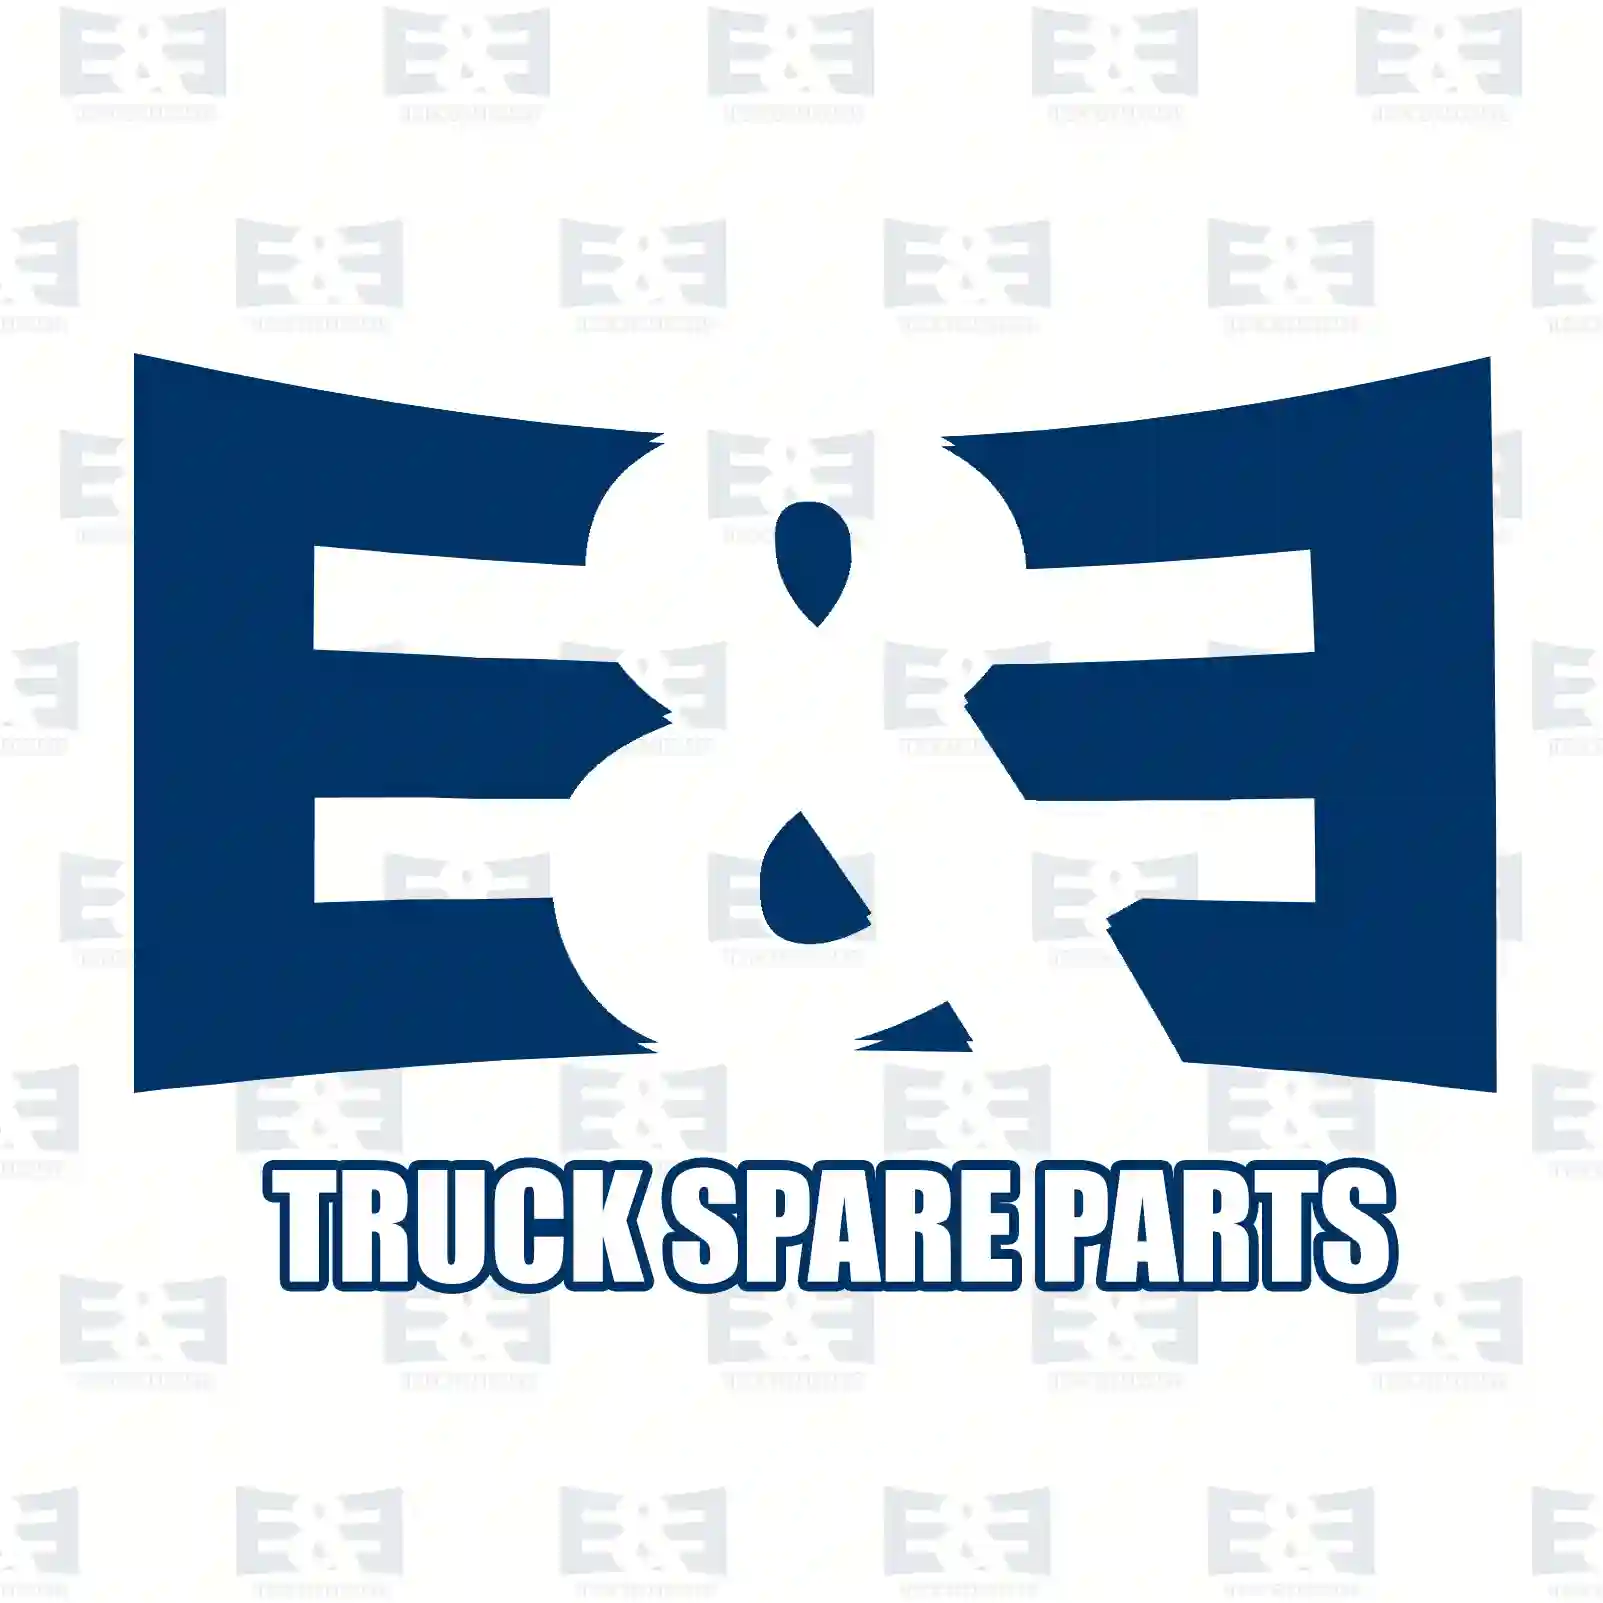 Exhaust brake, complete, 2E2208150, 1401782 ||  2E2208150 E&E Truck Spare Parts | Truck Spare Parts, Auotomotive Spare Parts Exhaust brake, complete, 2E2208150, 1401782 ||  2E2208150 E&E Truck Spare Parts | Truck Spare Parts, Auotomotive Spare Parts